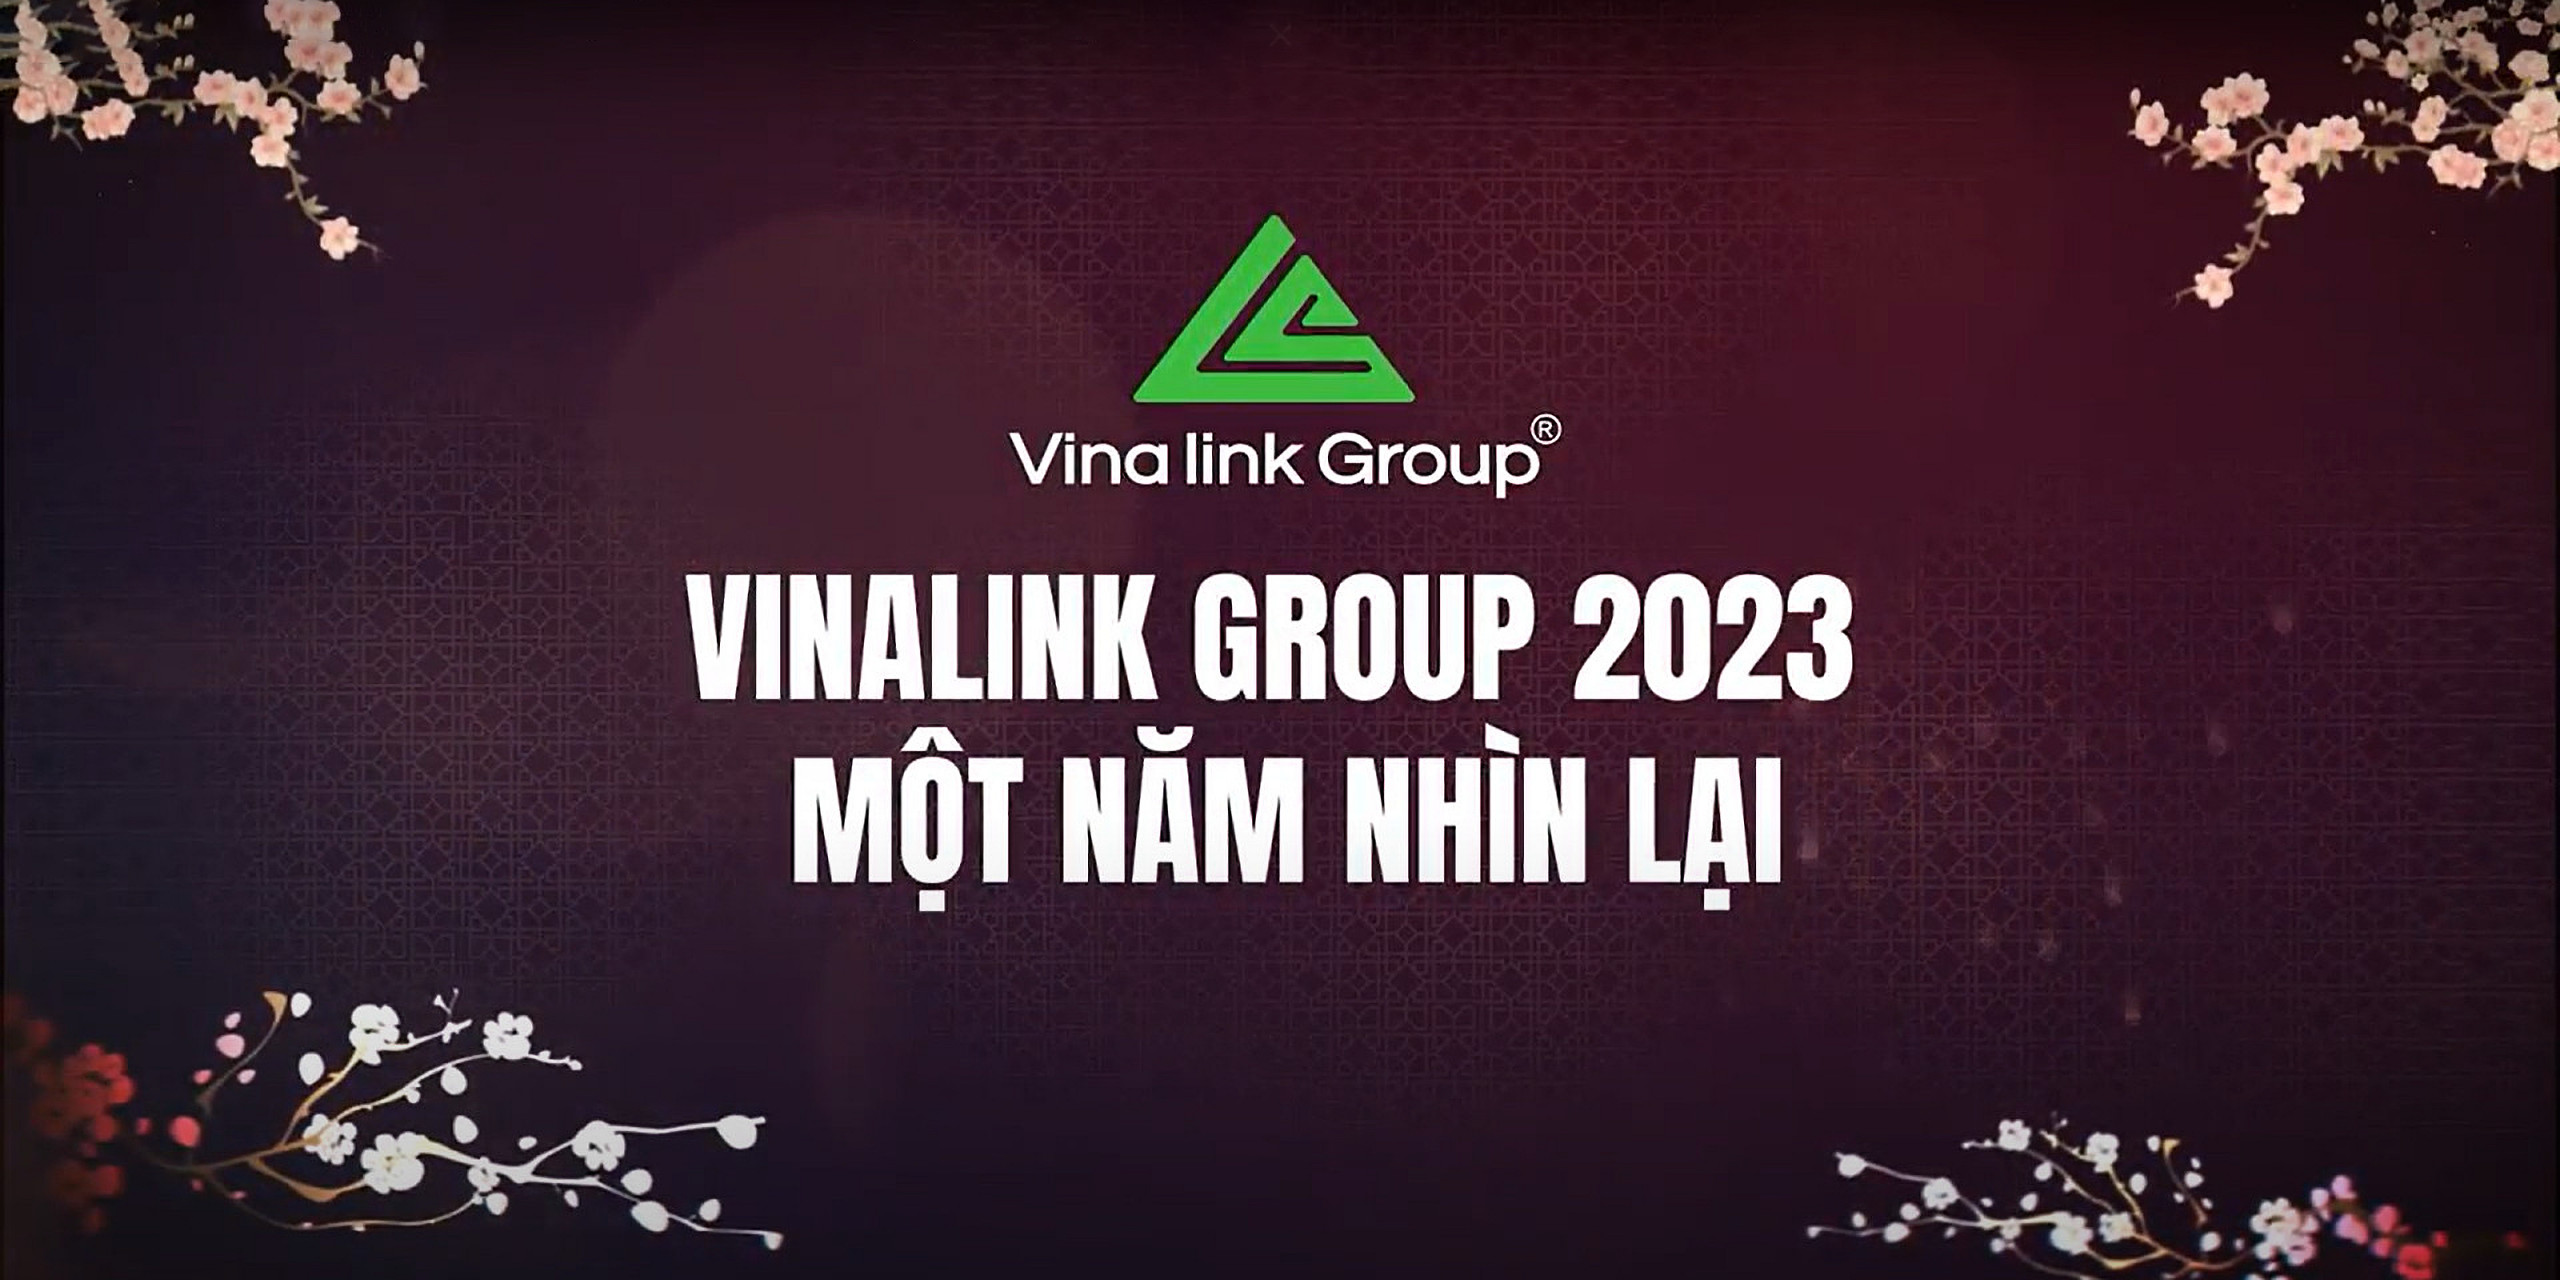 VINALINK GROUP - HÀNH TRÌNH NĂM 2023: NHÌN LẠI ĐỂ VƯƠN XA